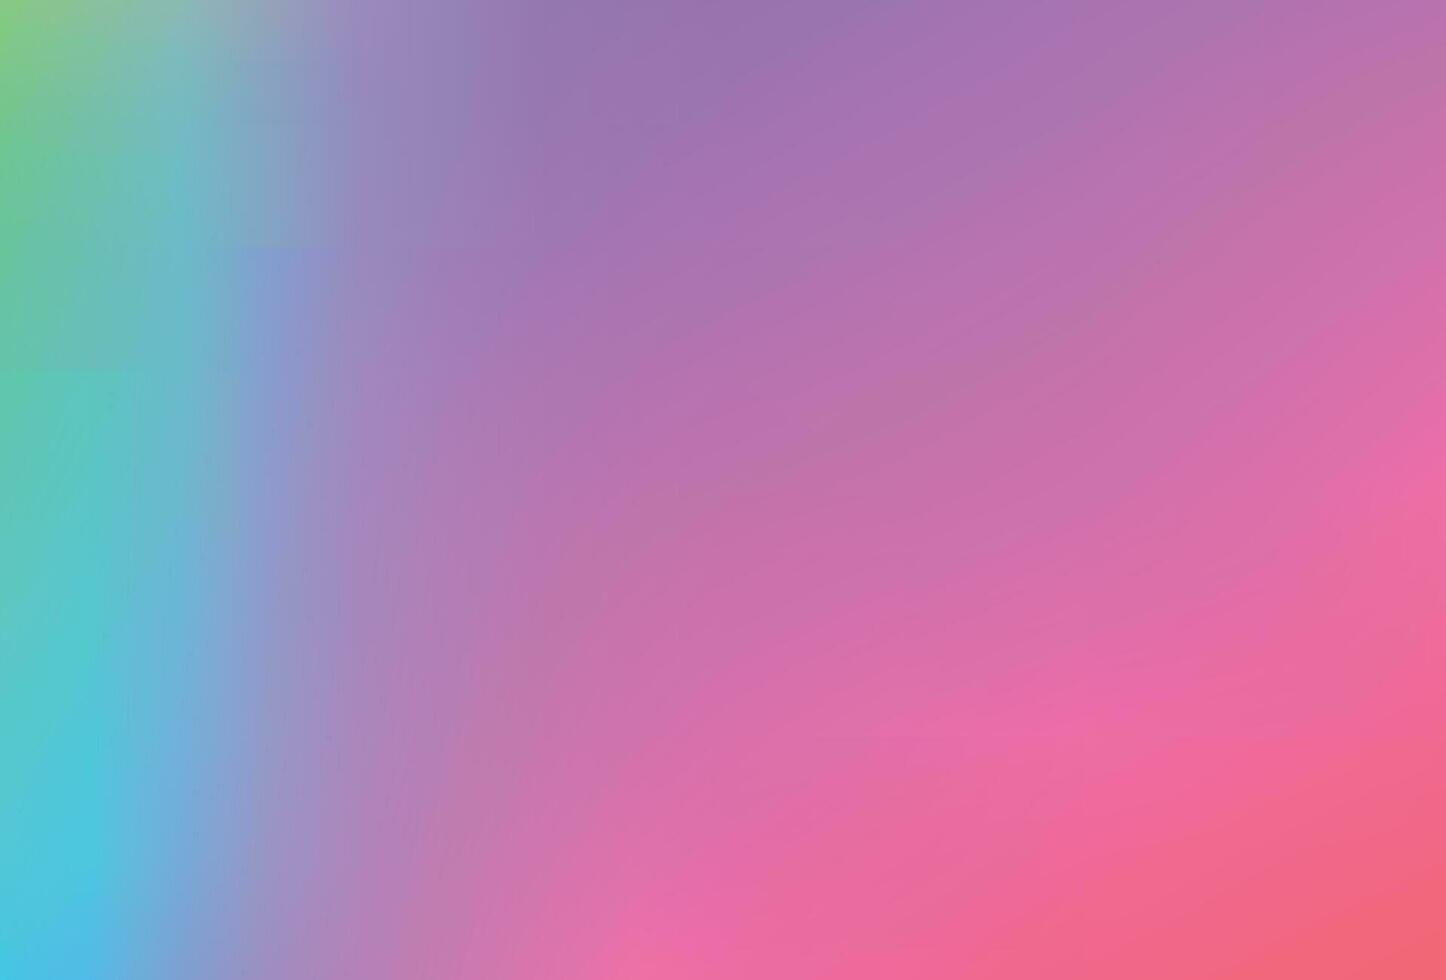 fond de filet dégradé coloré lisse et flou. couleurs arc-en-ciel lumineuses modernes. modèle de bannière de vecteur de couleur douce modifiable facile